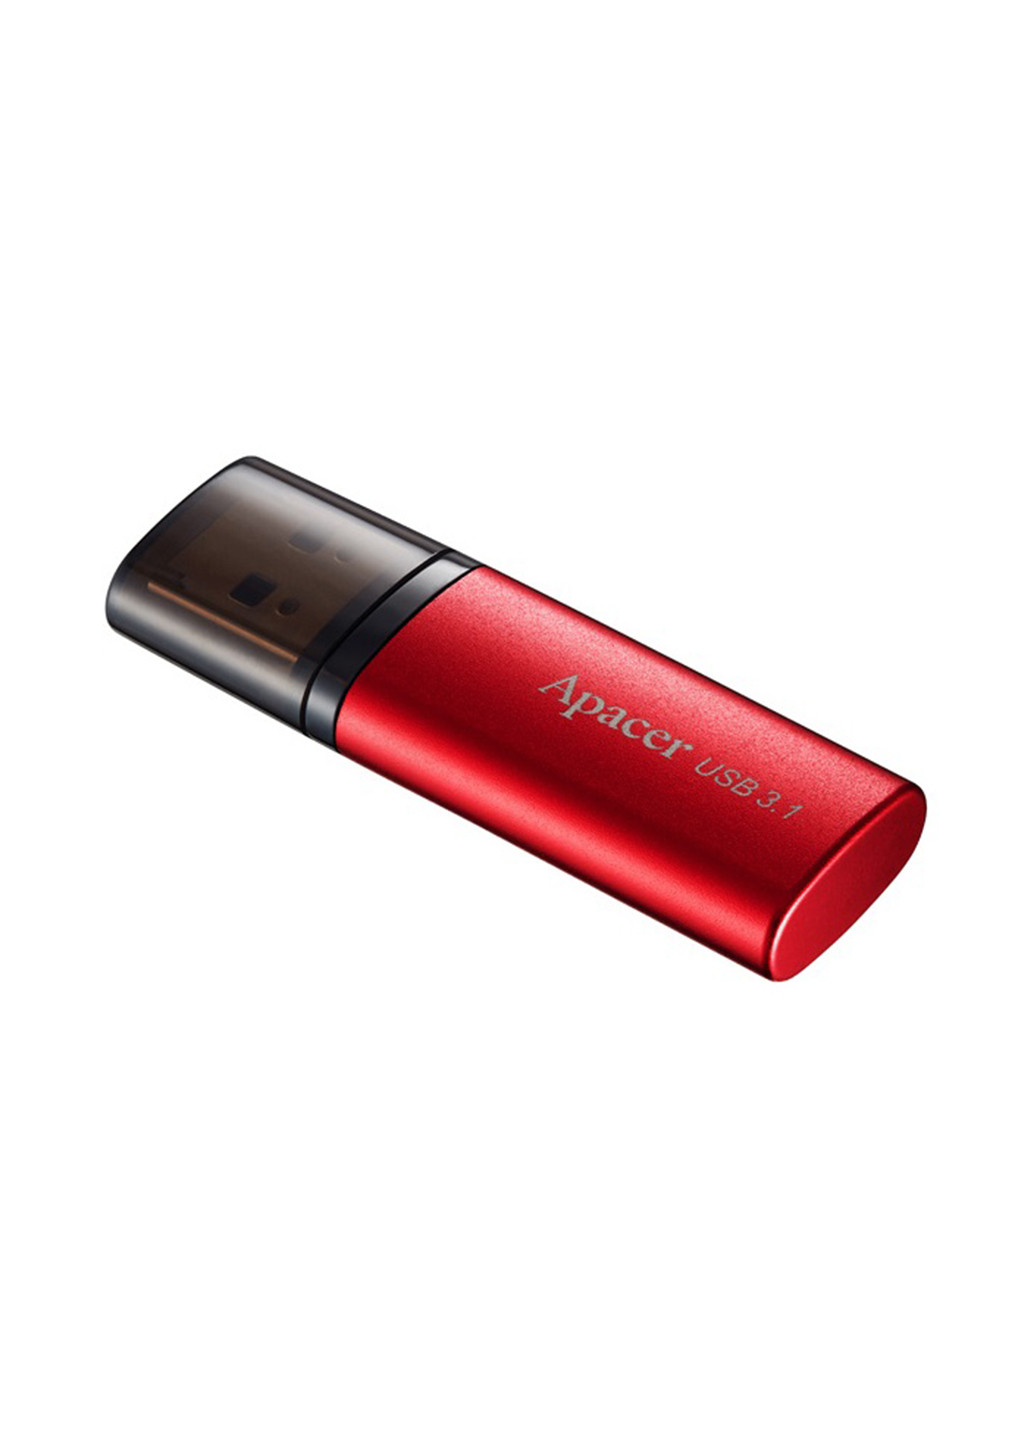 Флеш пам'ять USB AH25B 16GB USB 3.1 Red (AP16GAH25BR-1) Apacer флеш память usb apacer ah25b 16gb usb 3.1 red (ap16gah25br-1) (135165465)